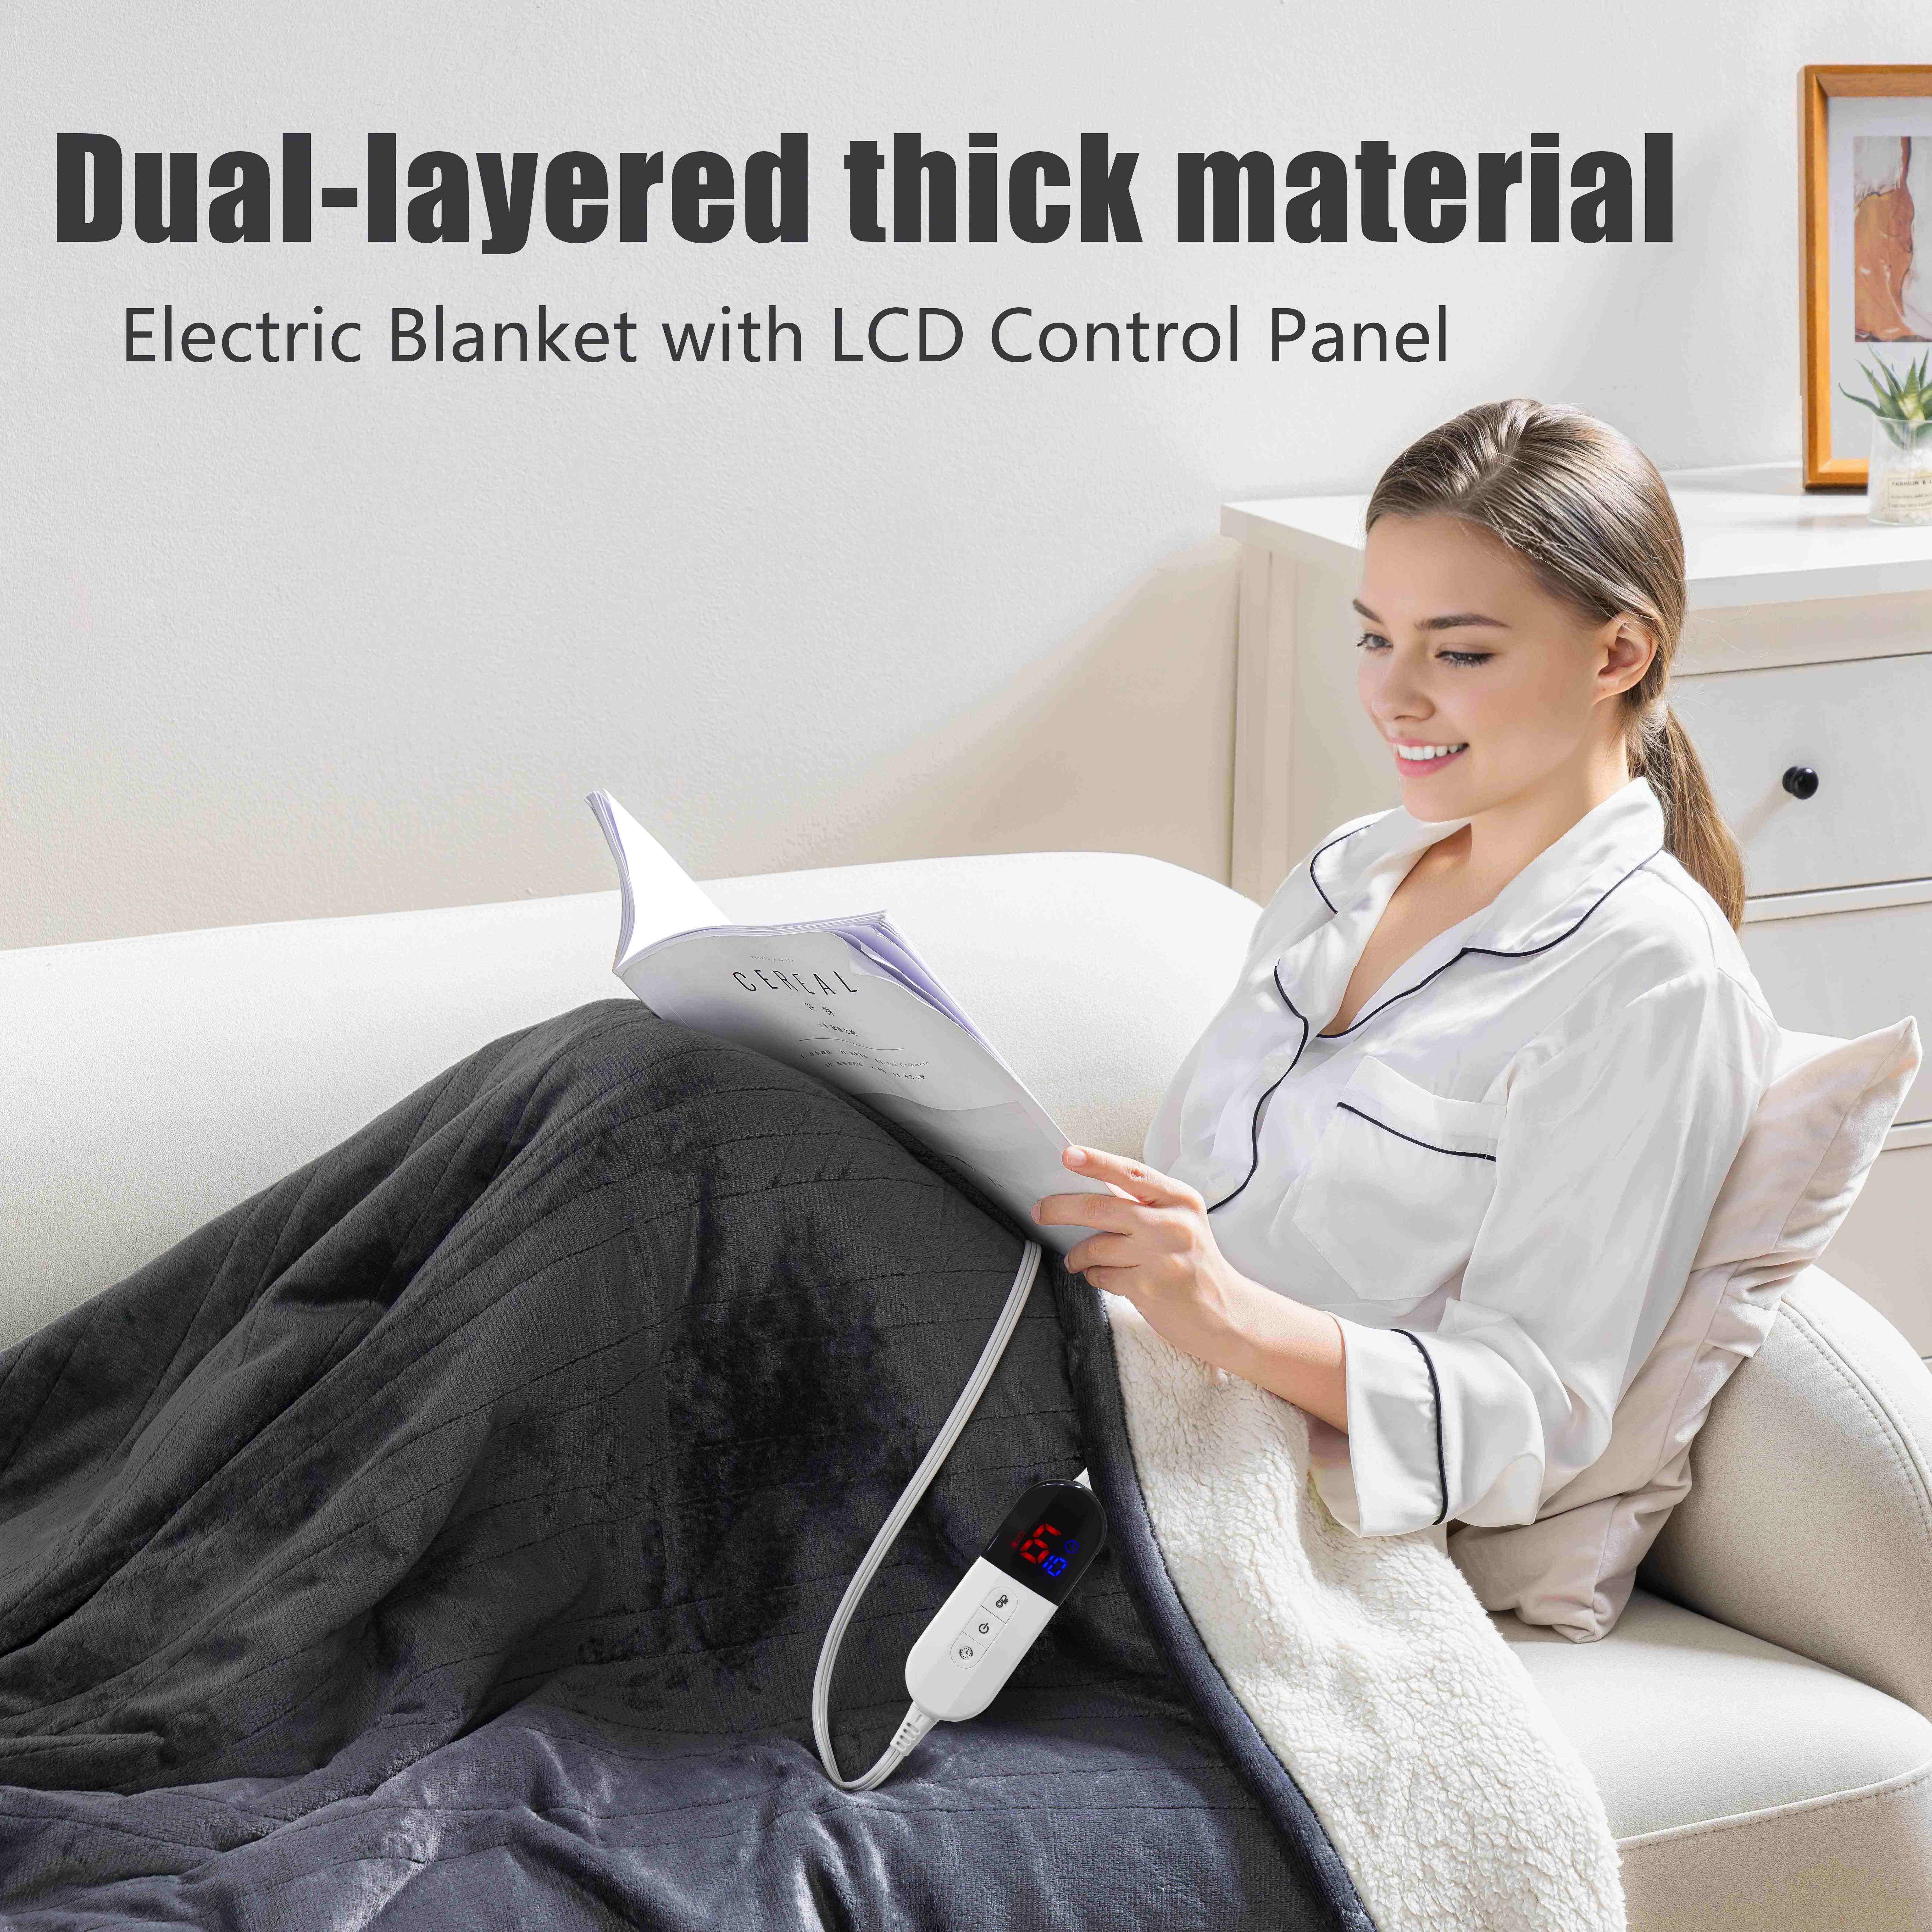 Calentador eléctrico de pies con masaje, vibración y calefacción, tela de  felpa suave y almohadilla de calentamiento rápido USB para mujeres y